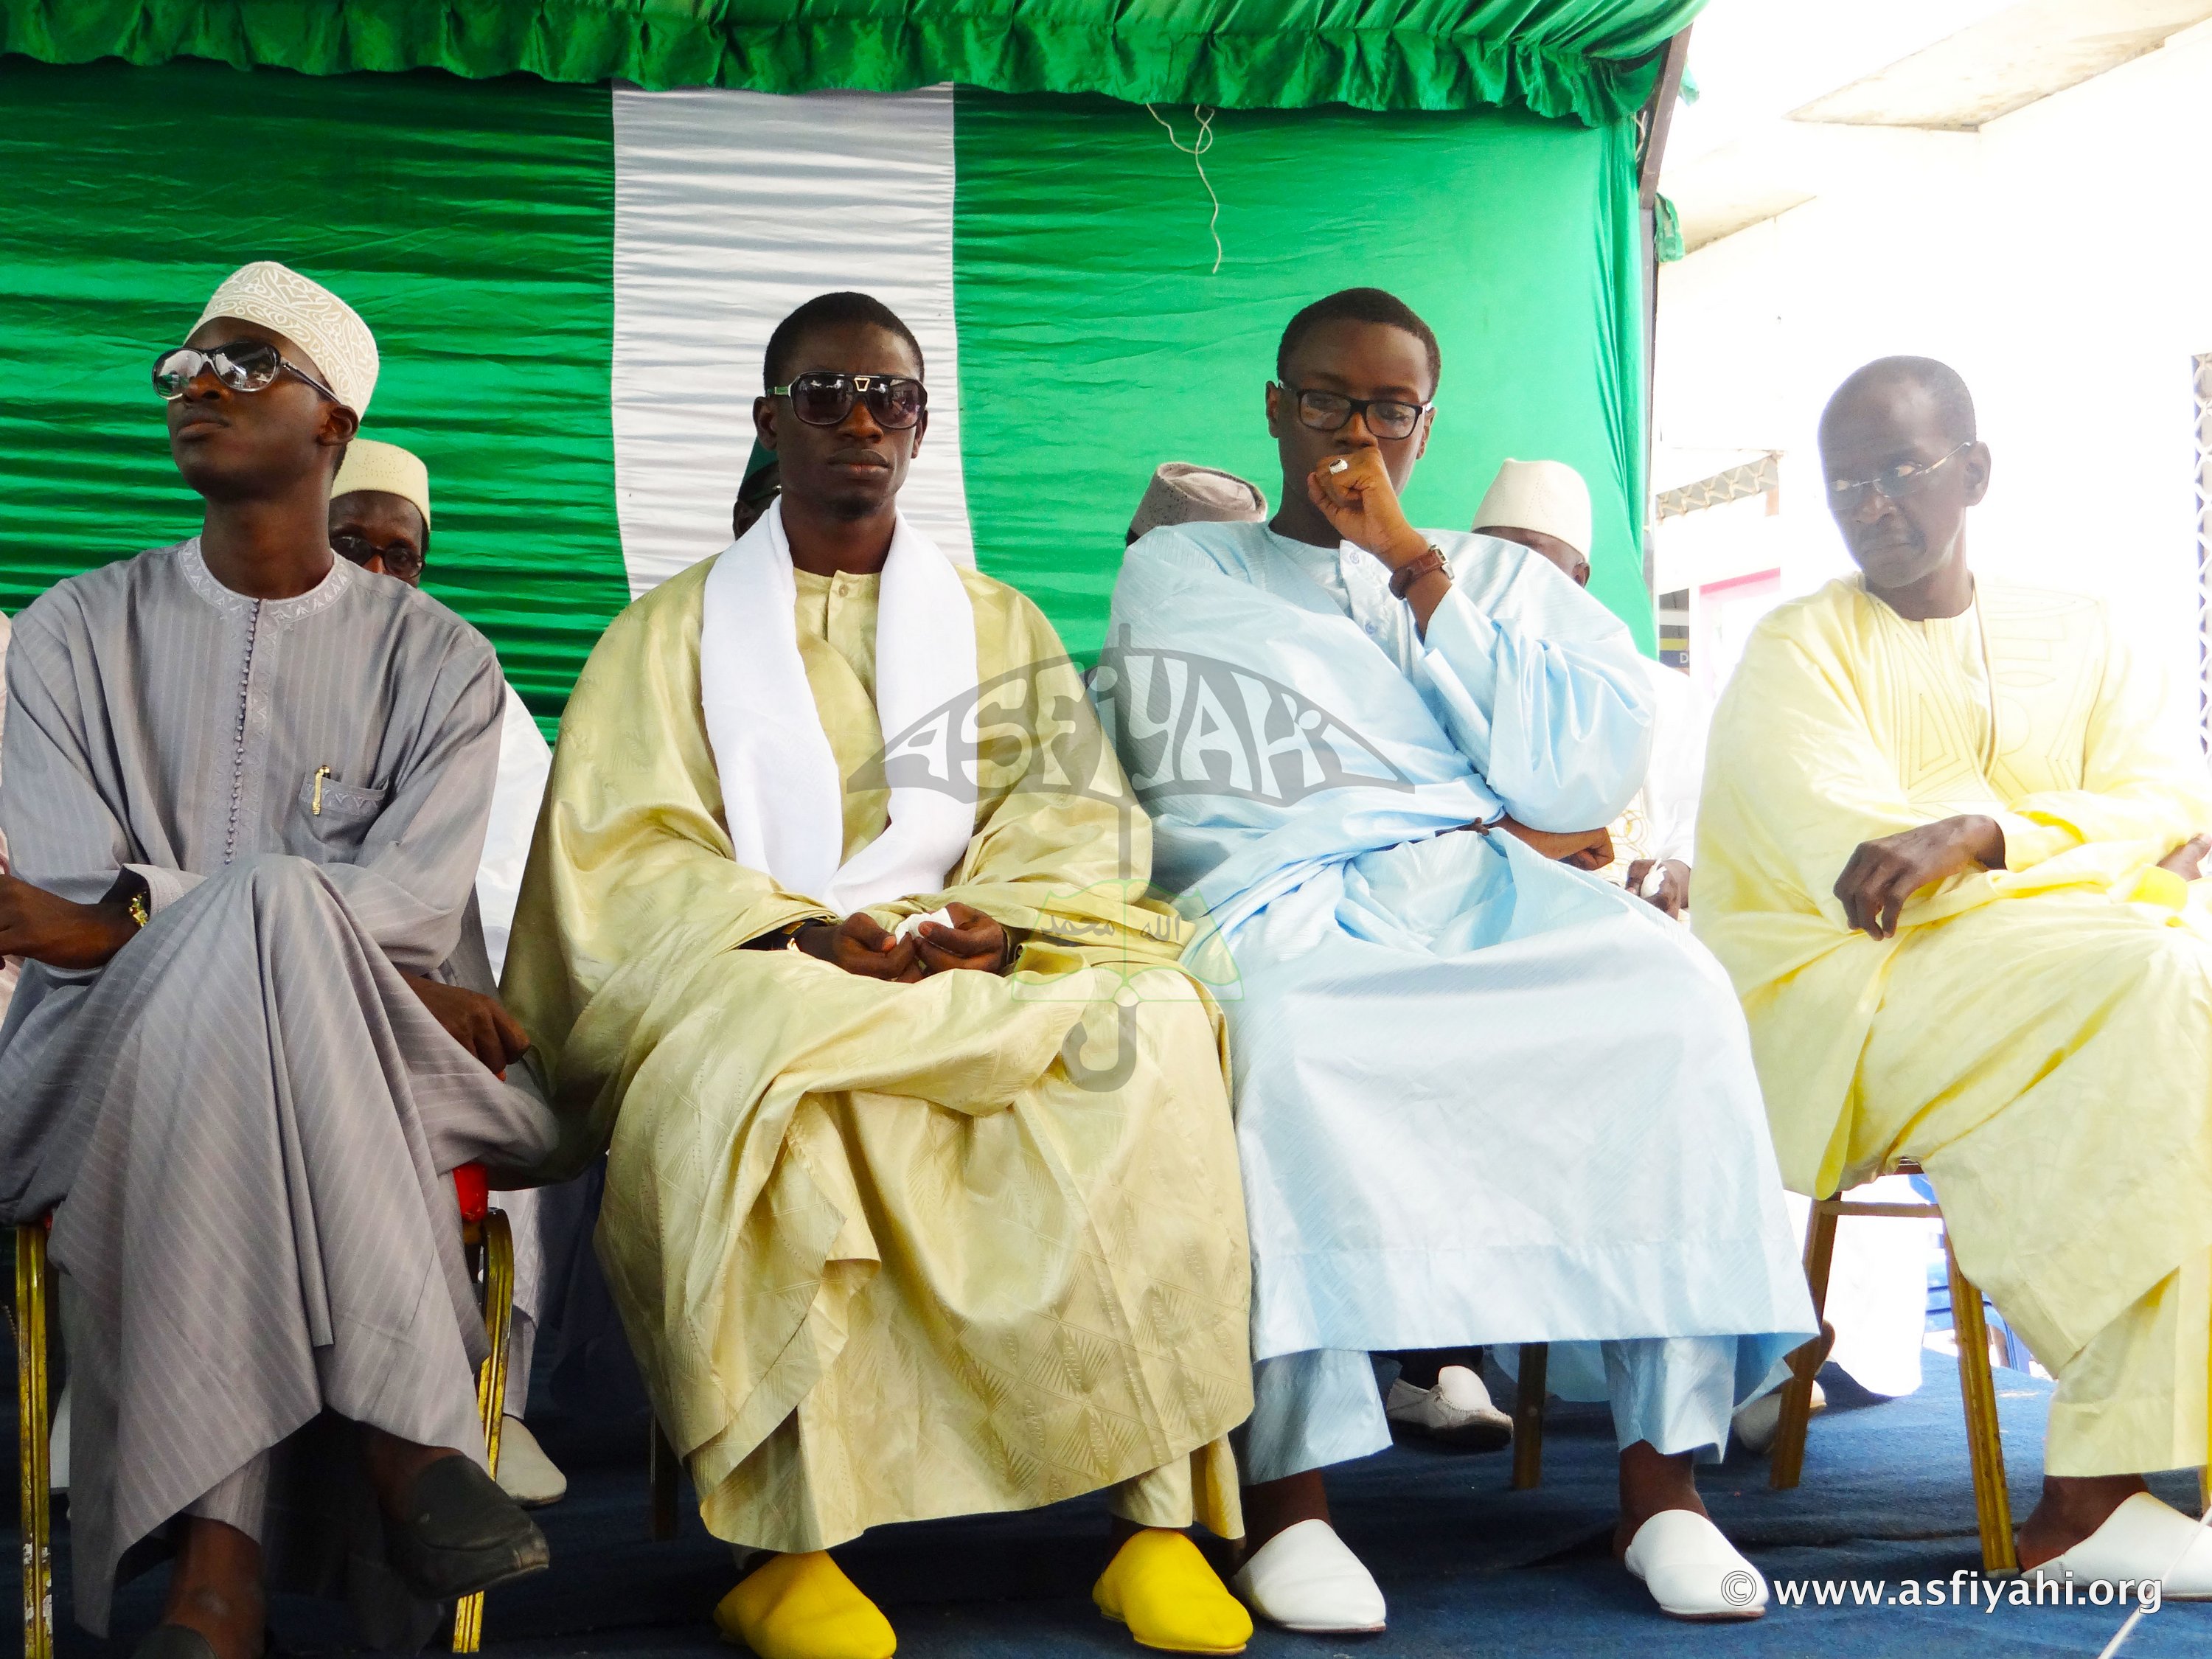 PHOTOS - Les Images la Conférence du regroupement "Tolou Alarba Serigne Cheikh Tidiane SY Al Maktoum" , organisée ce Samedi 15 Août 2015 à Liberté 6